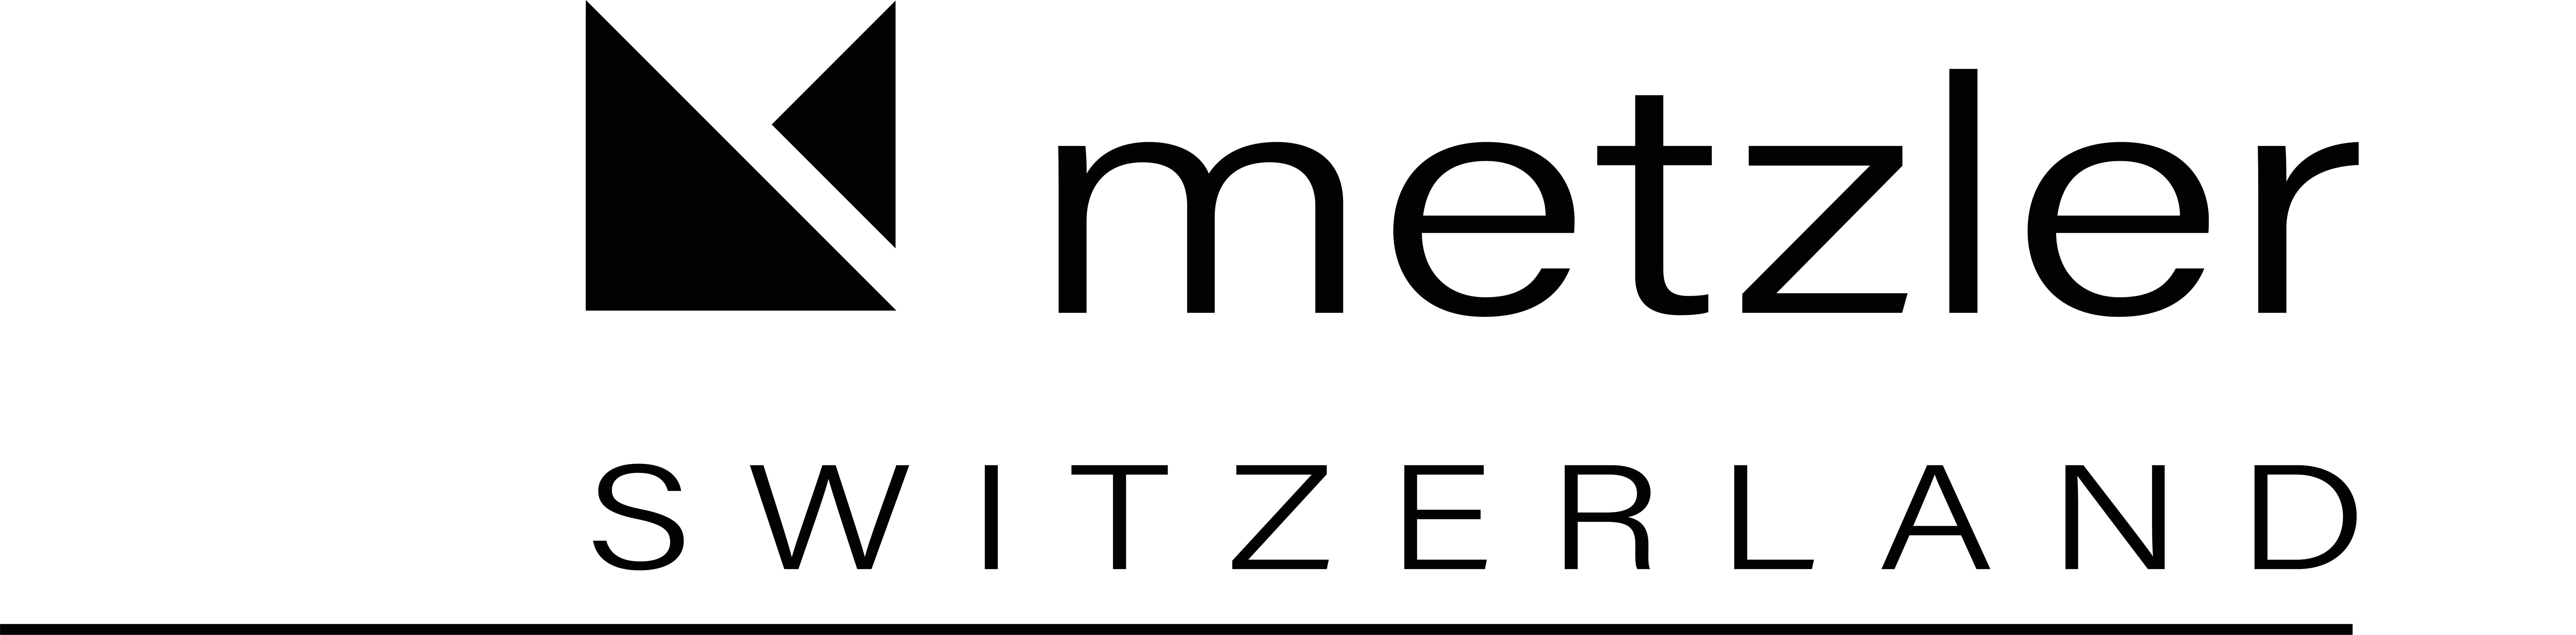 metzler logo 2020